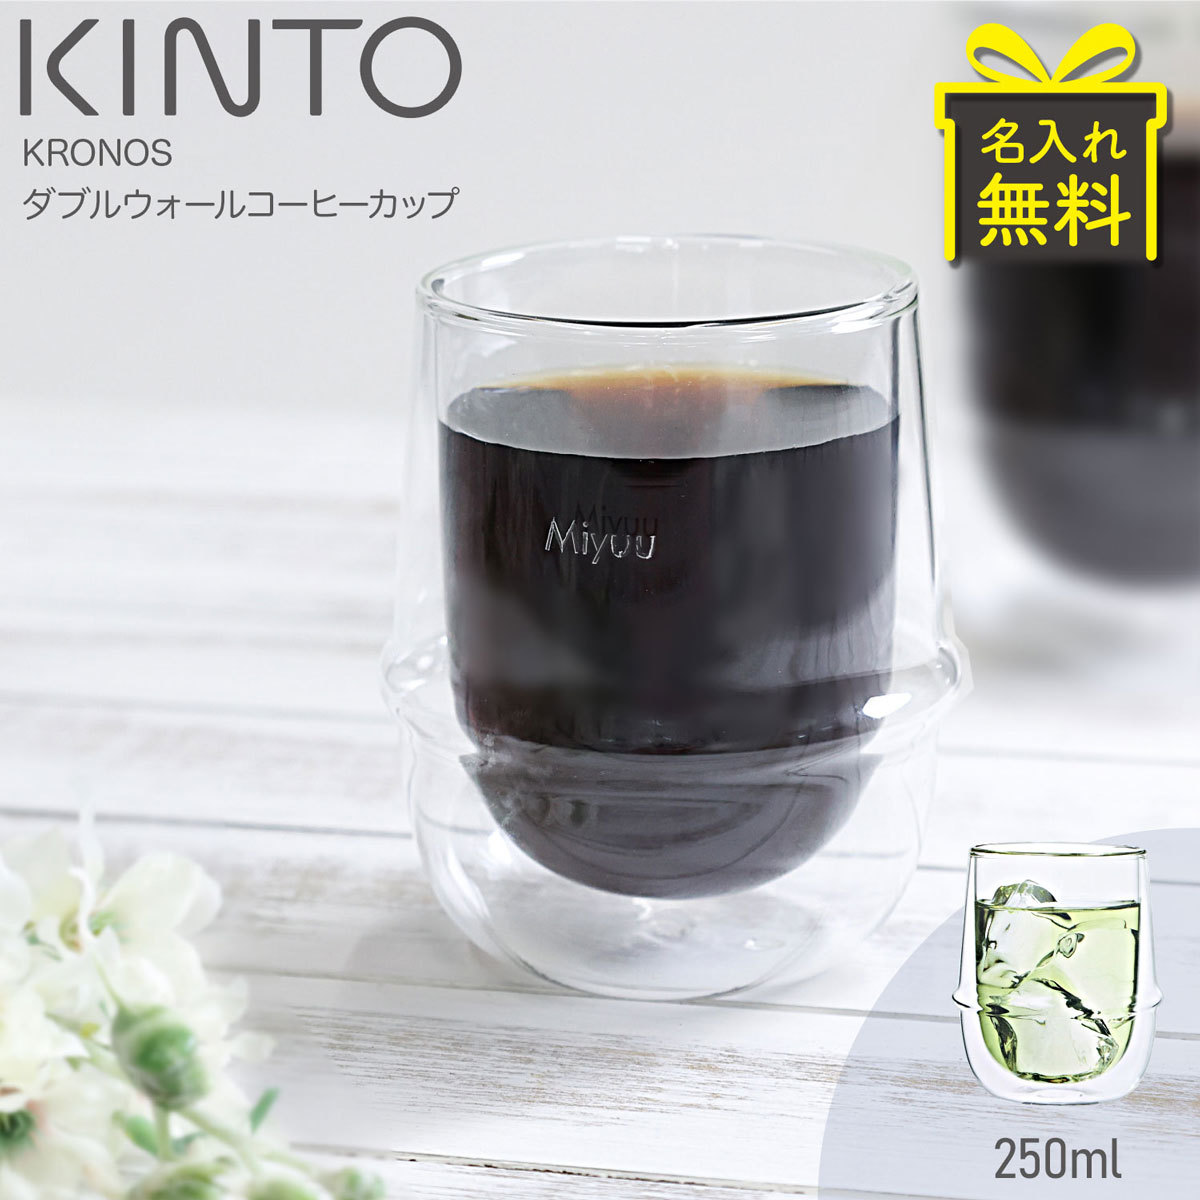 正規店仕入れの KINTO キントー KRONOS ダブルウォール コーヒーカップ 250ml discoversvg.com